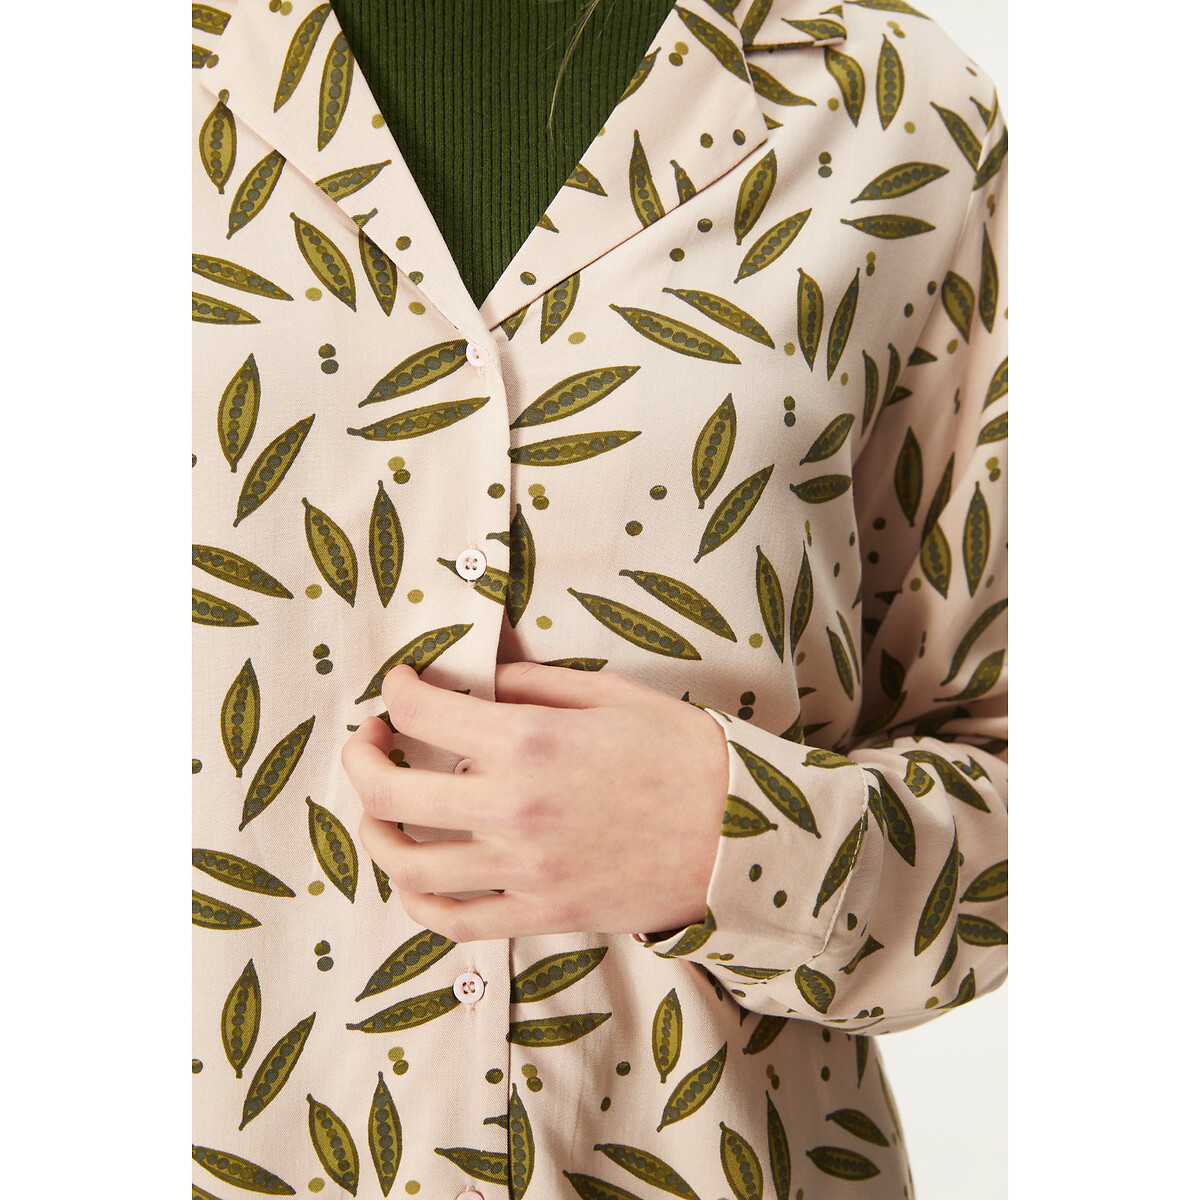 Блузка COMPANIA FANTASTICA Блузка С V-образным вырезом и принтом L бежевый, размер L - фото 3